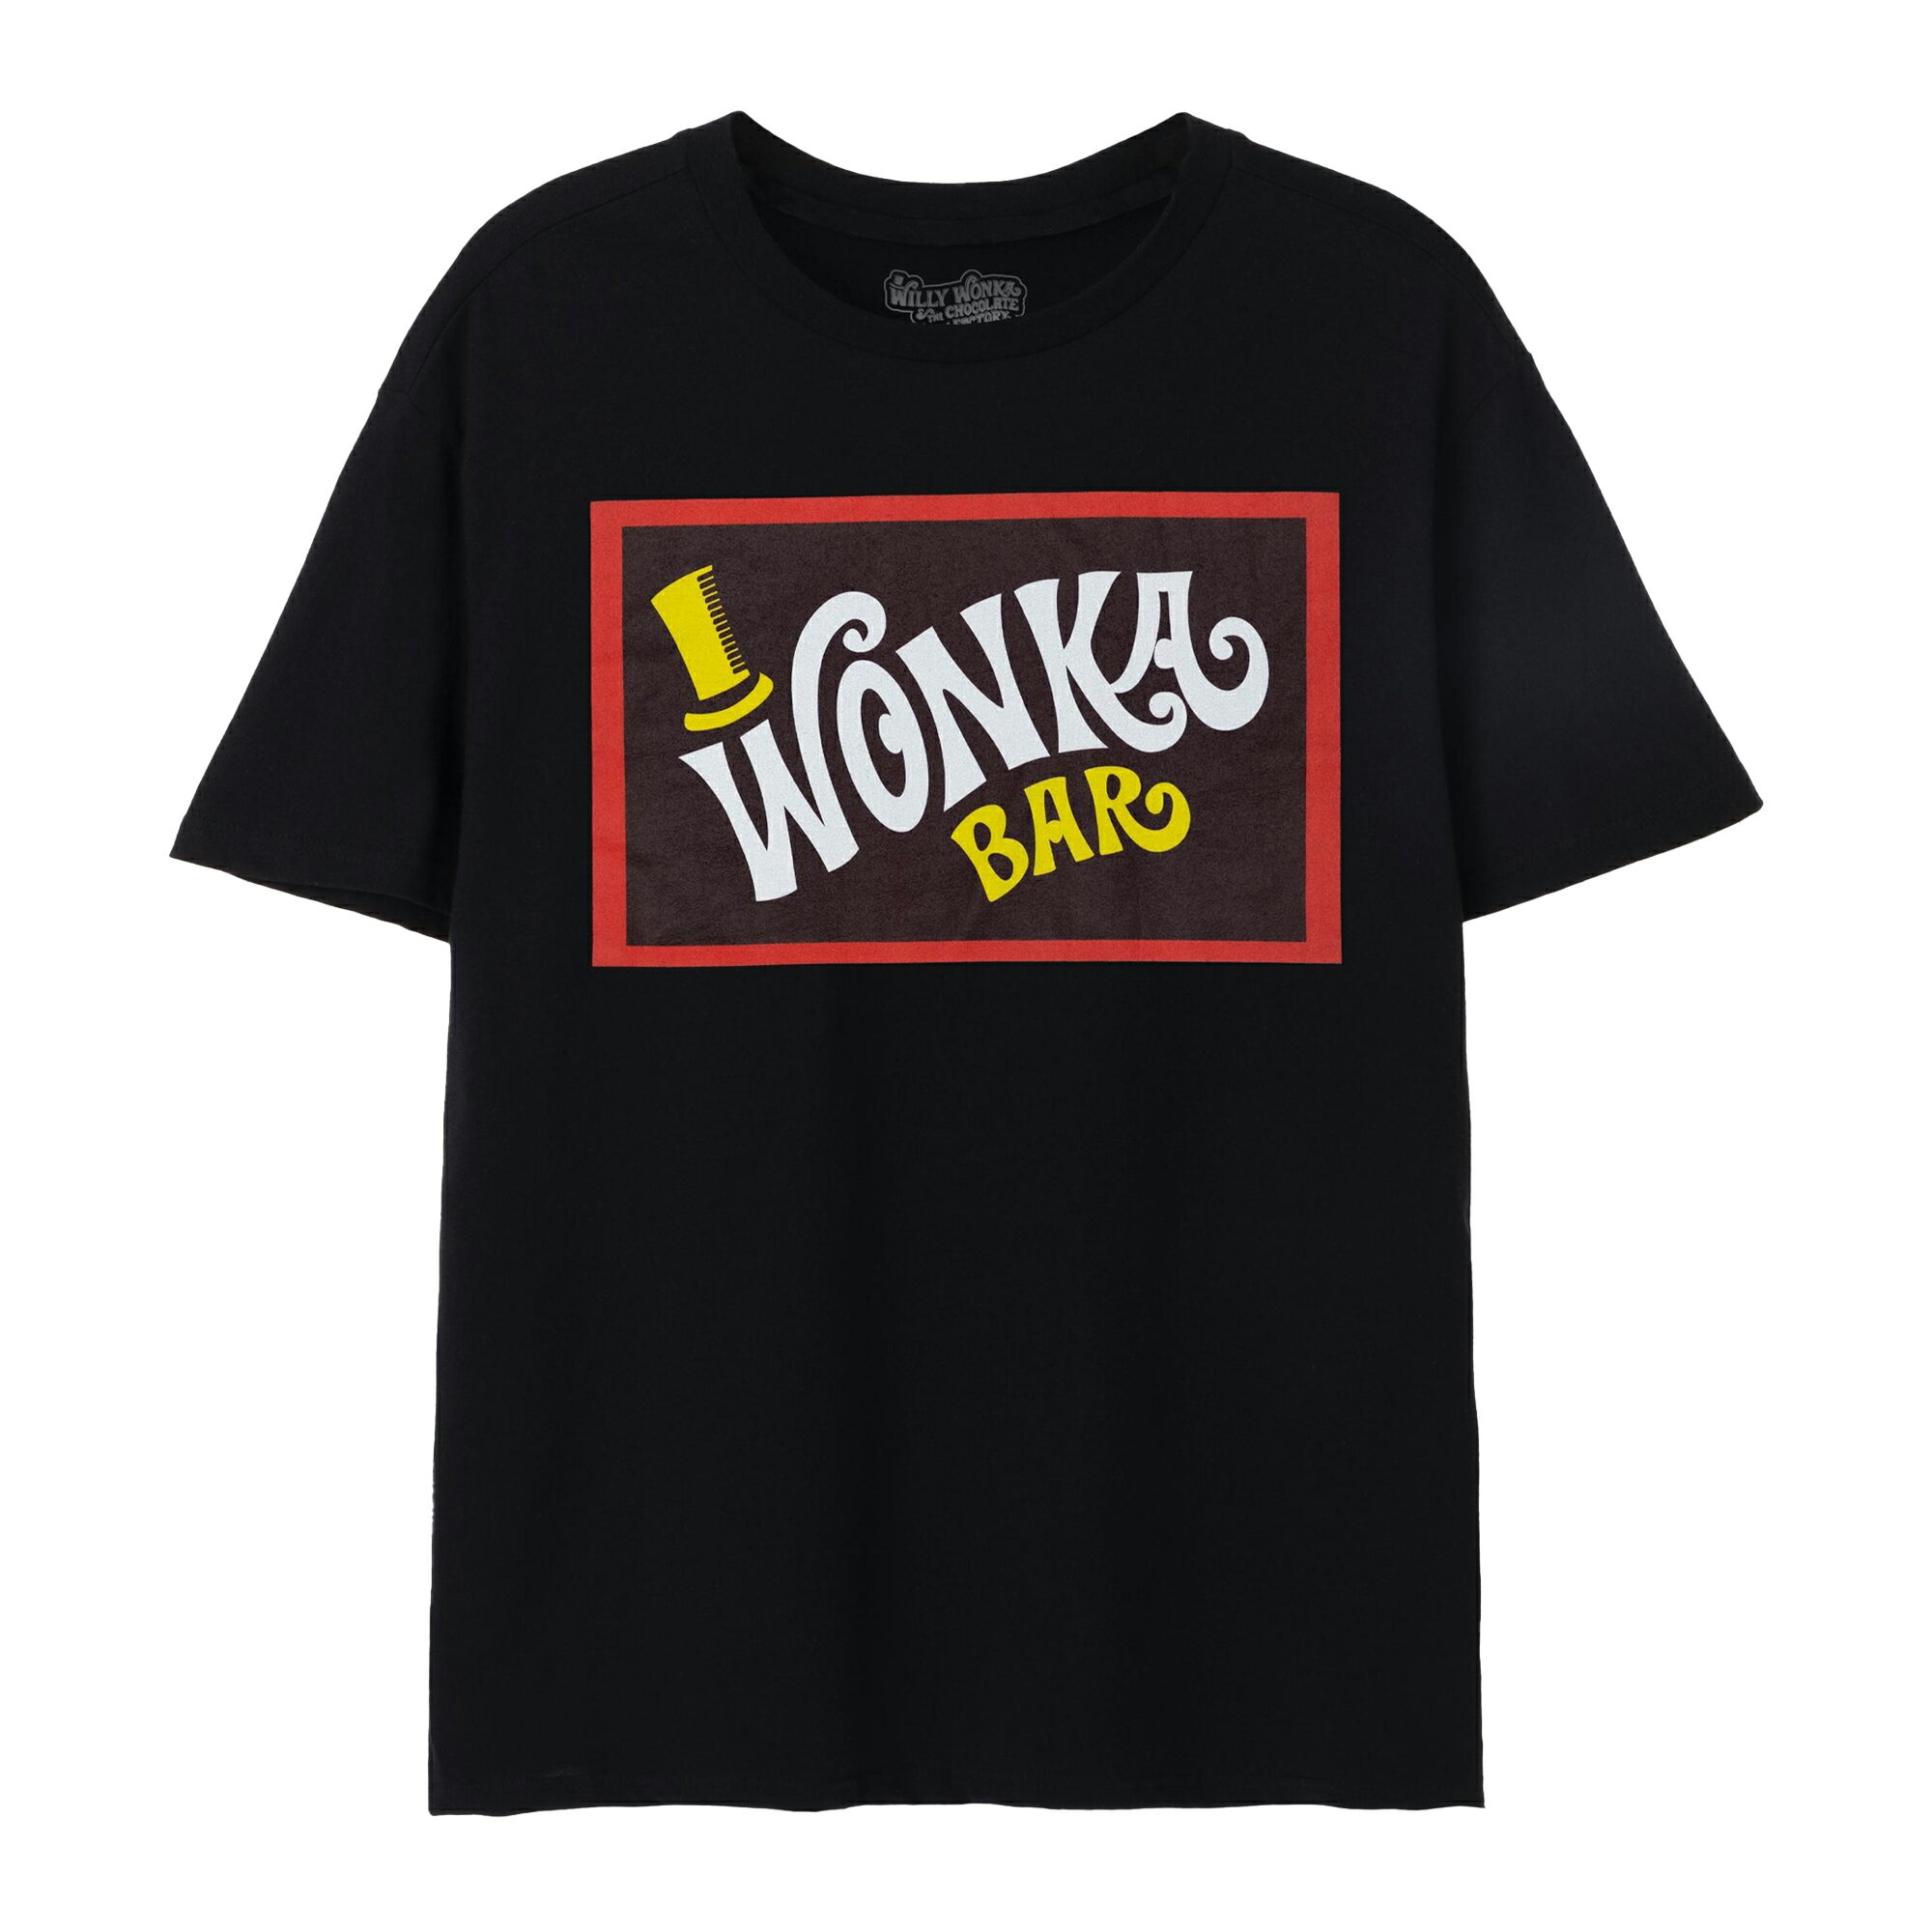 (ウォンカとチョコレート工場のはじまり) Wonka オフィシャル商品 ユニセックス Bar Tシャツ 半袖 トップス 【海外通販】